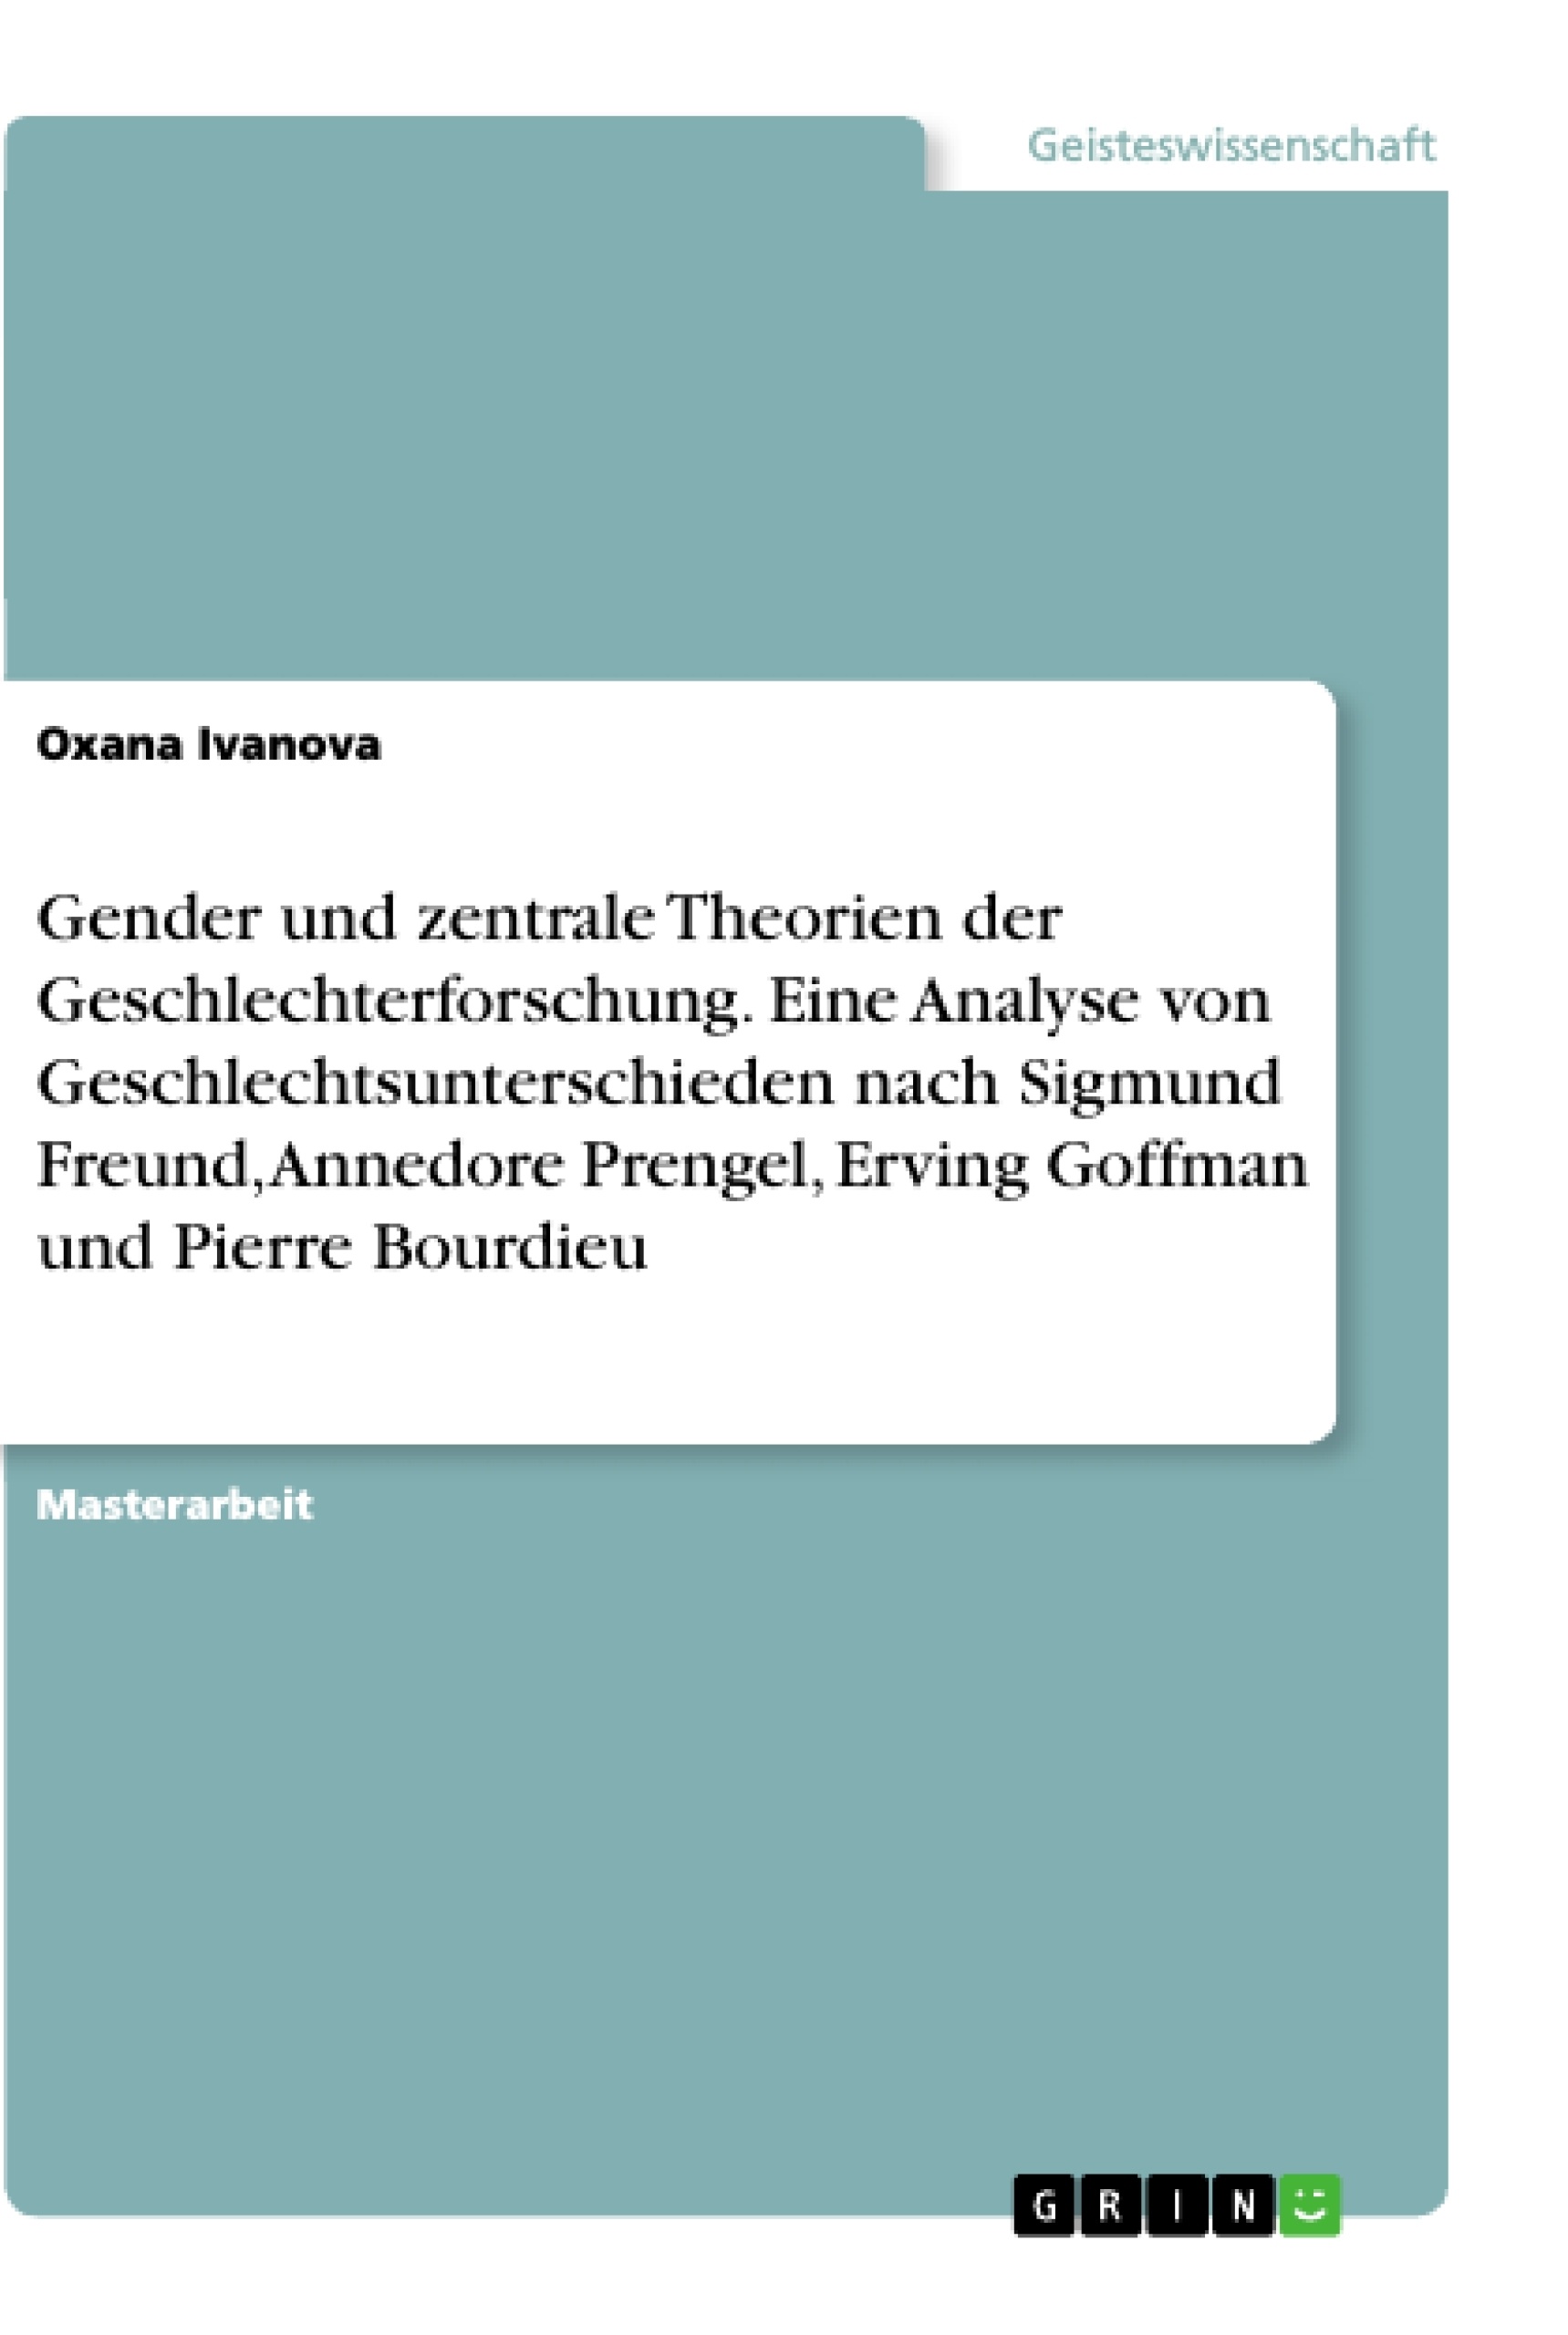 Title: Gender und zentrale Theorien der Geschlechterforschung. Eine Analyse von Geschlechtsunterschieden nach Sigmund Freund, Annedore Prengel, Erving Goffman und Pierre Bourdieu